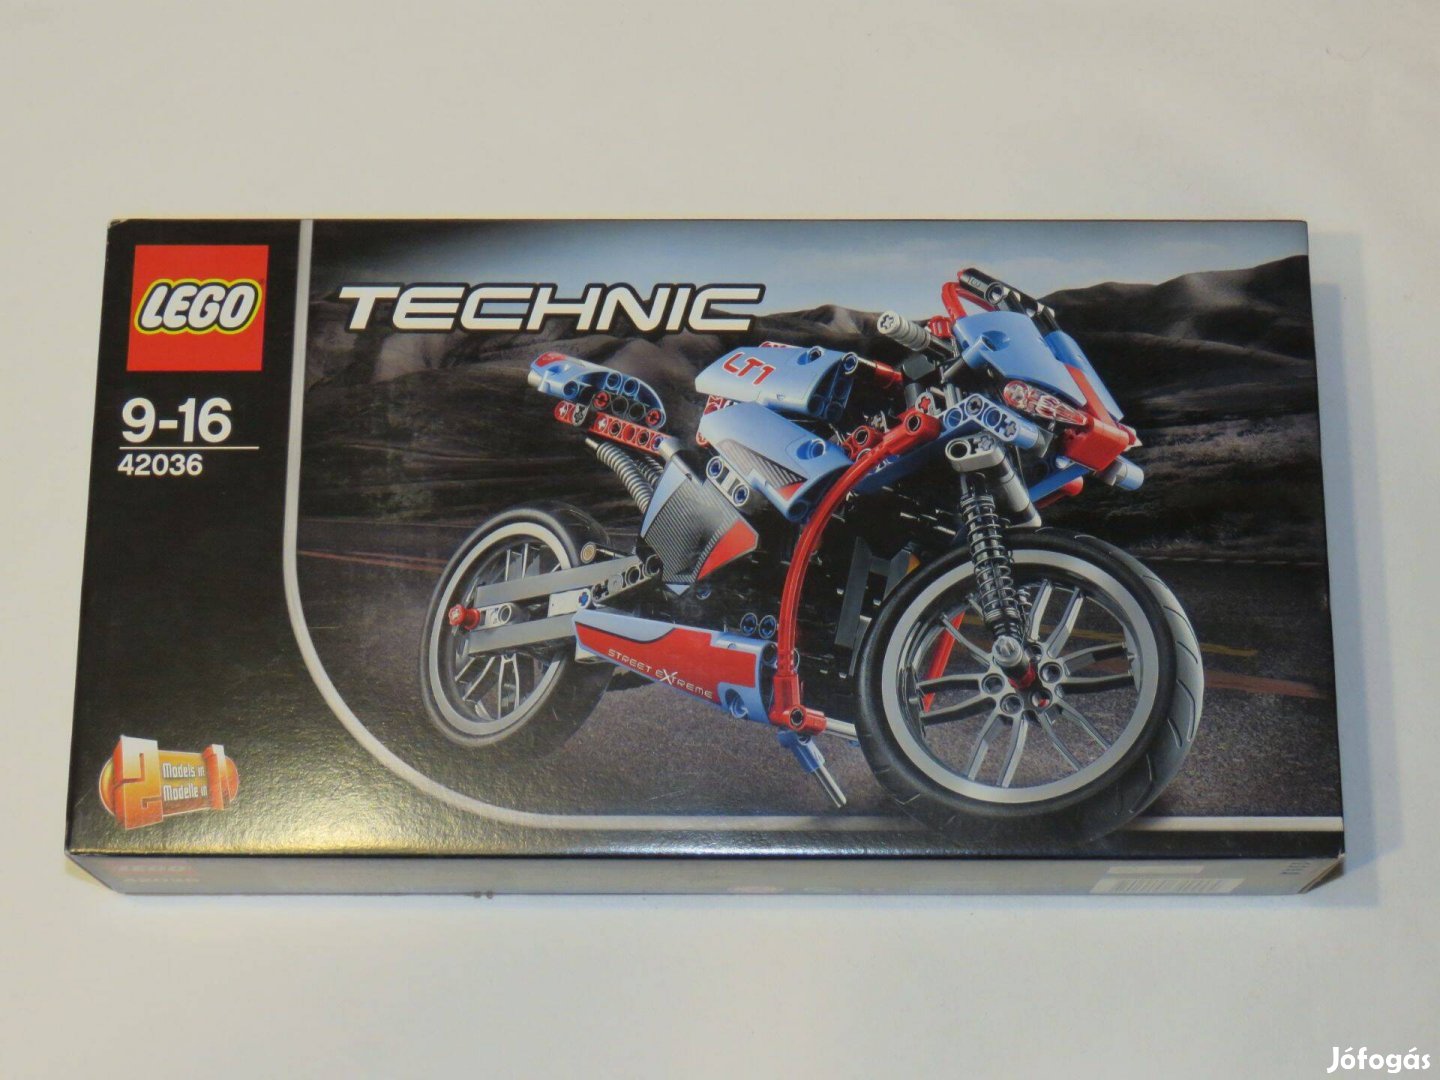 LEGO Technic - Street Motorcycle (42036)